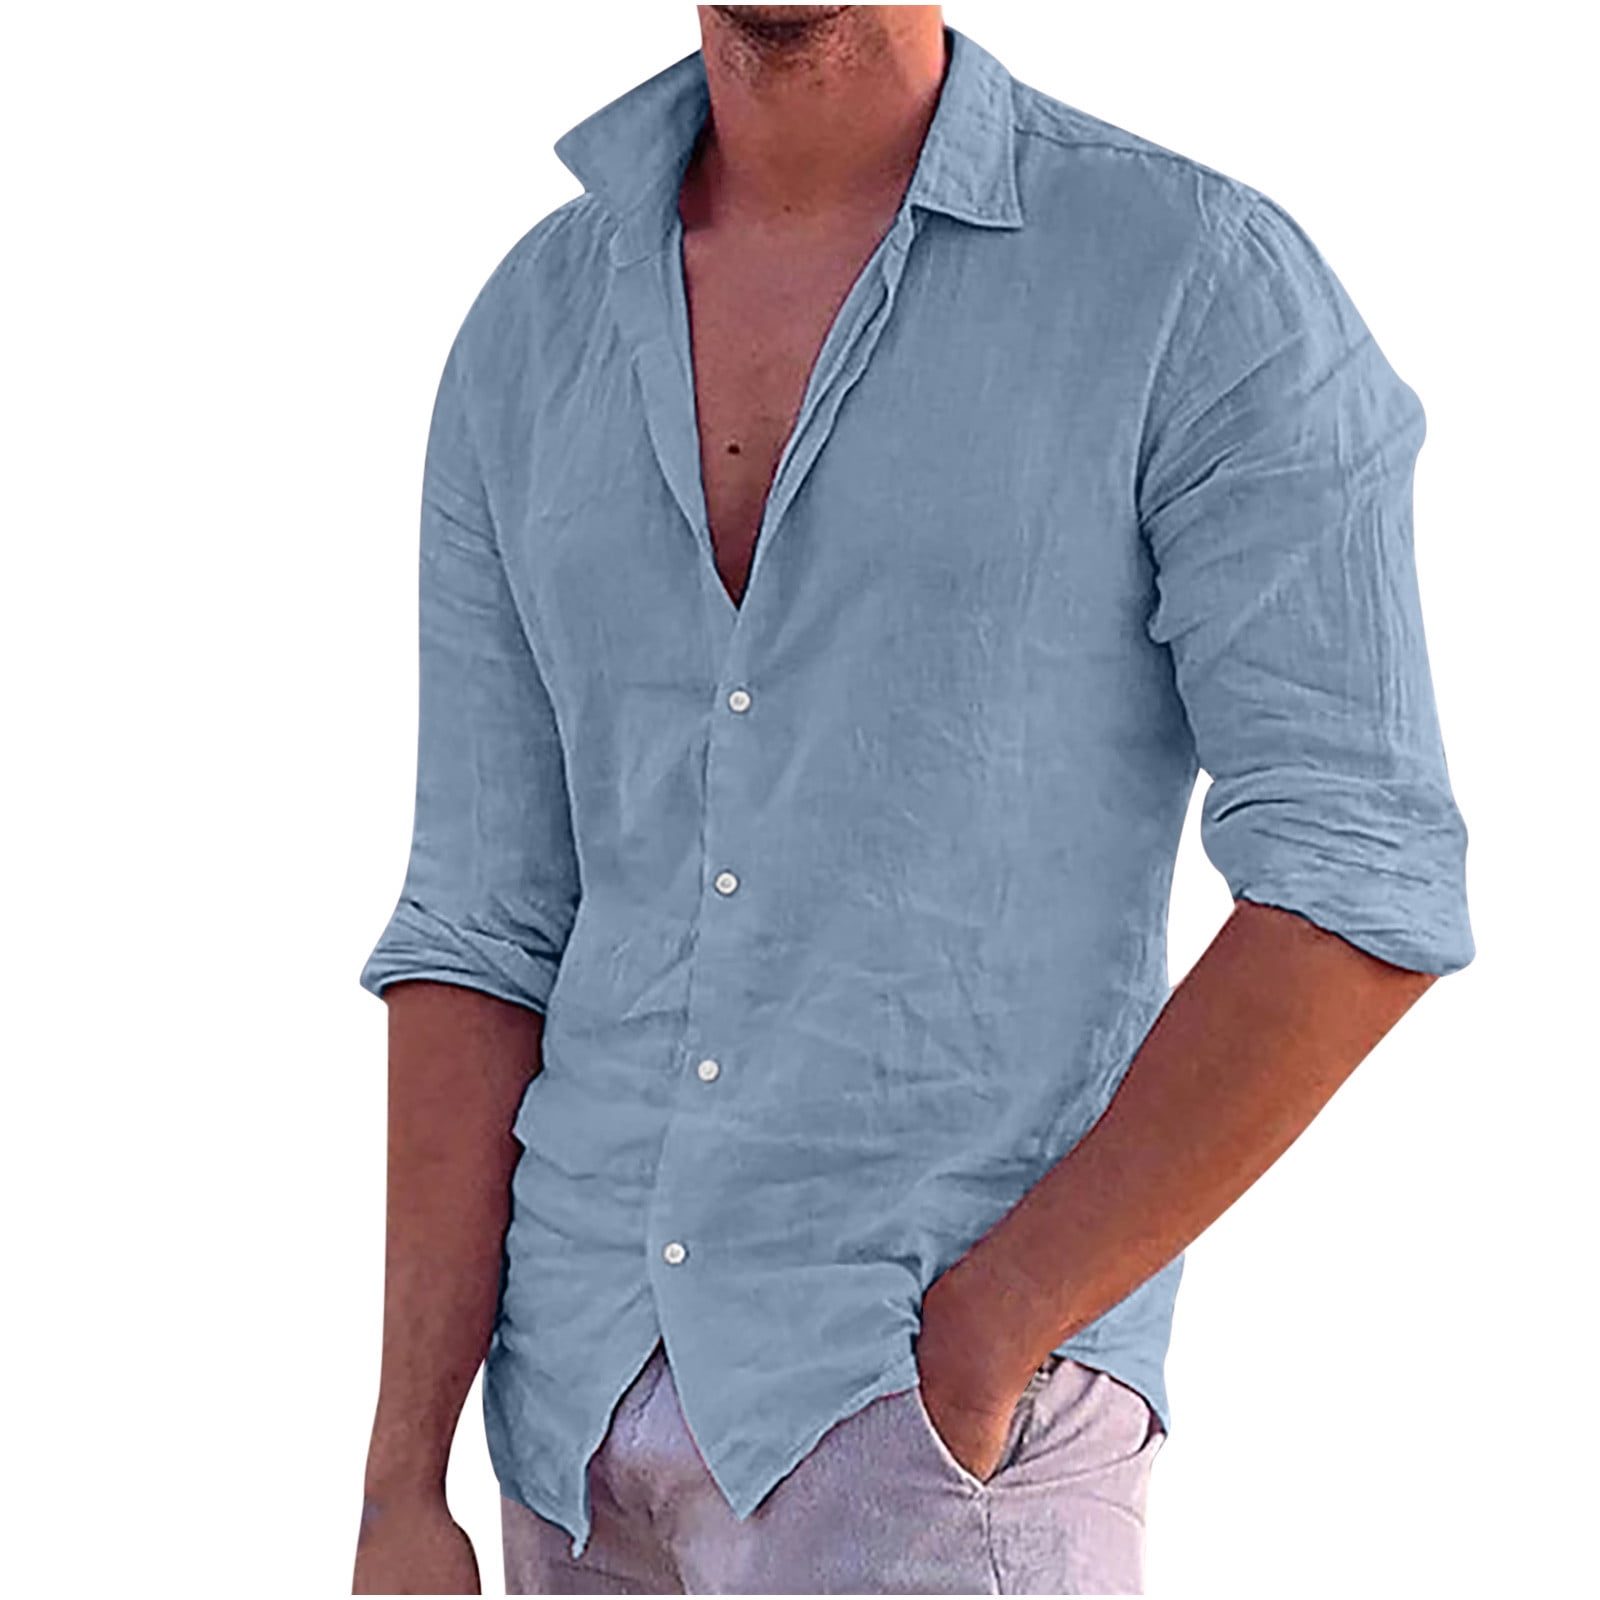 Cotton Linen Vintage Shirts for Men Button Up Long Sleeve Beach Shirt  Casual Summer Vacation Lightweight Cool Tops 